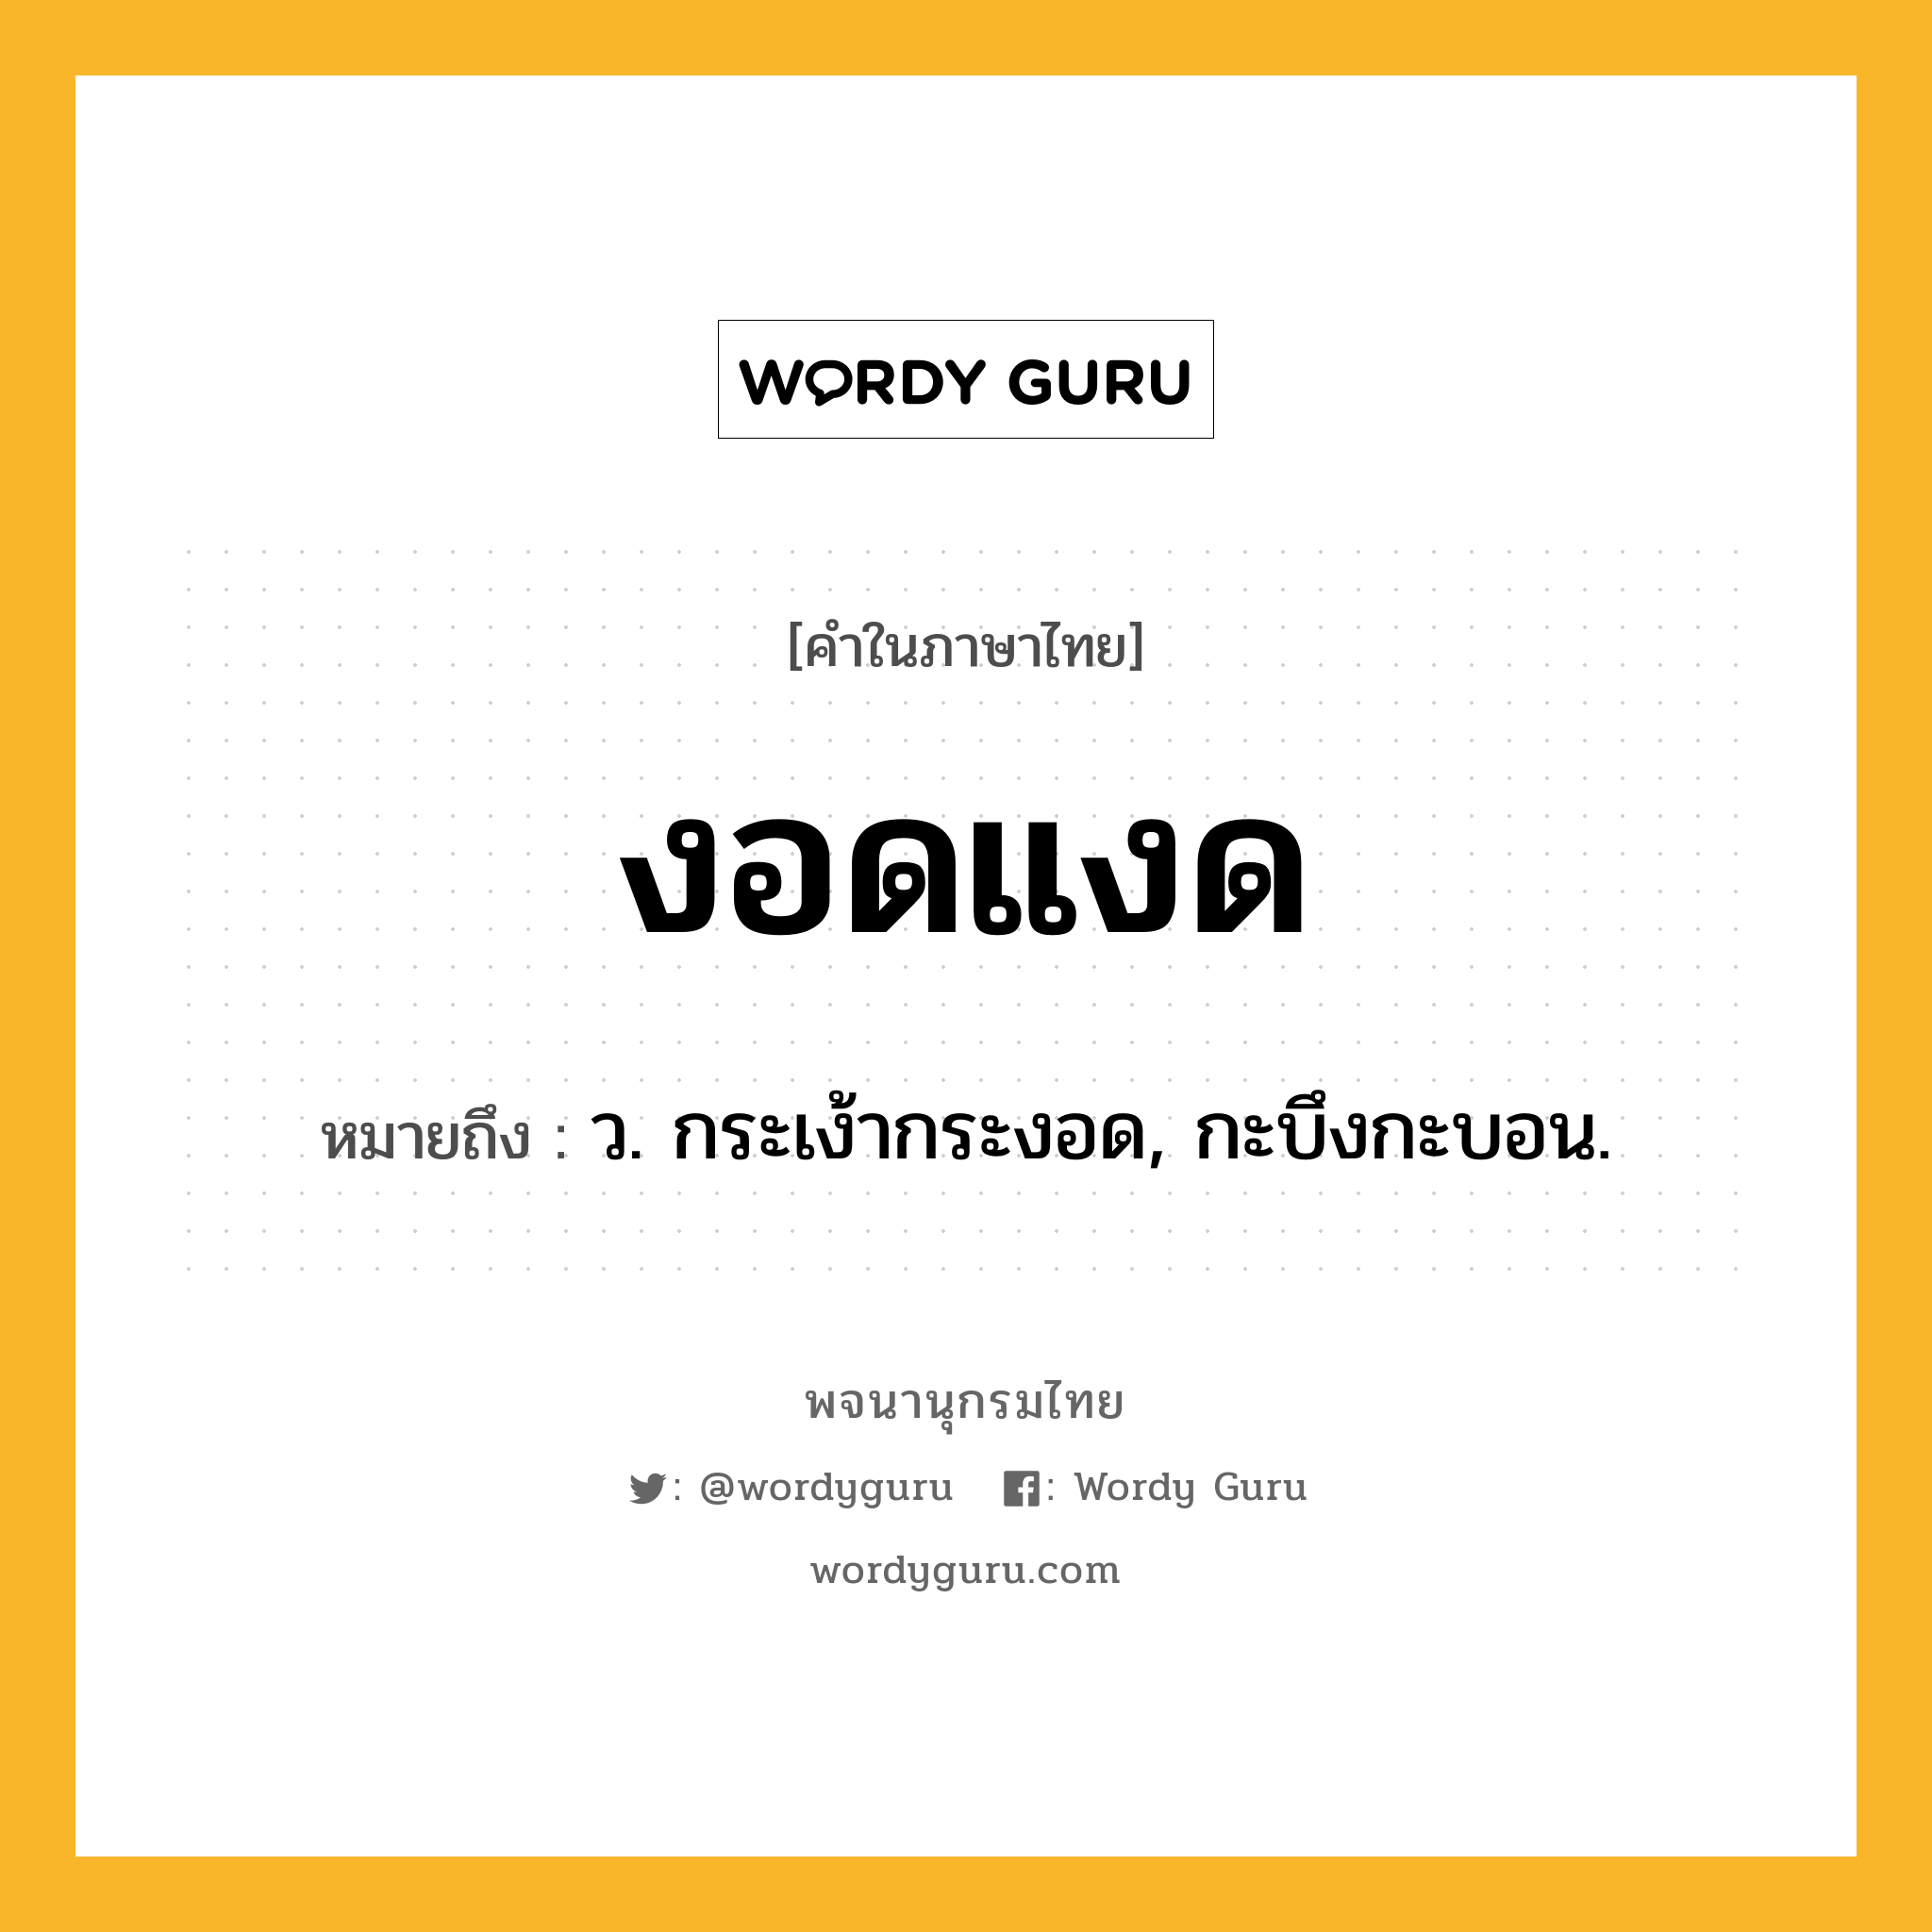 งอดแงด ความหมาย หมายถึงอะไร?, คำในภาษาไทย งอดแงด หมายถึง ว. กระเง้ากระงอด, กะบึงกะบอน.